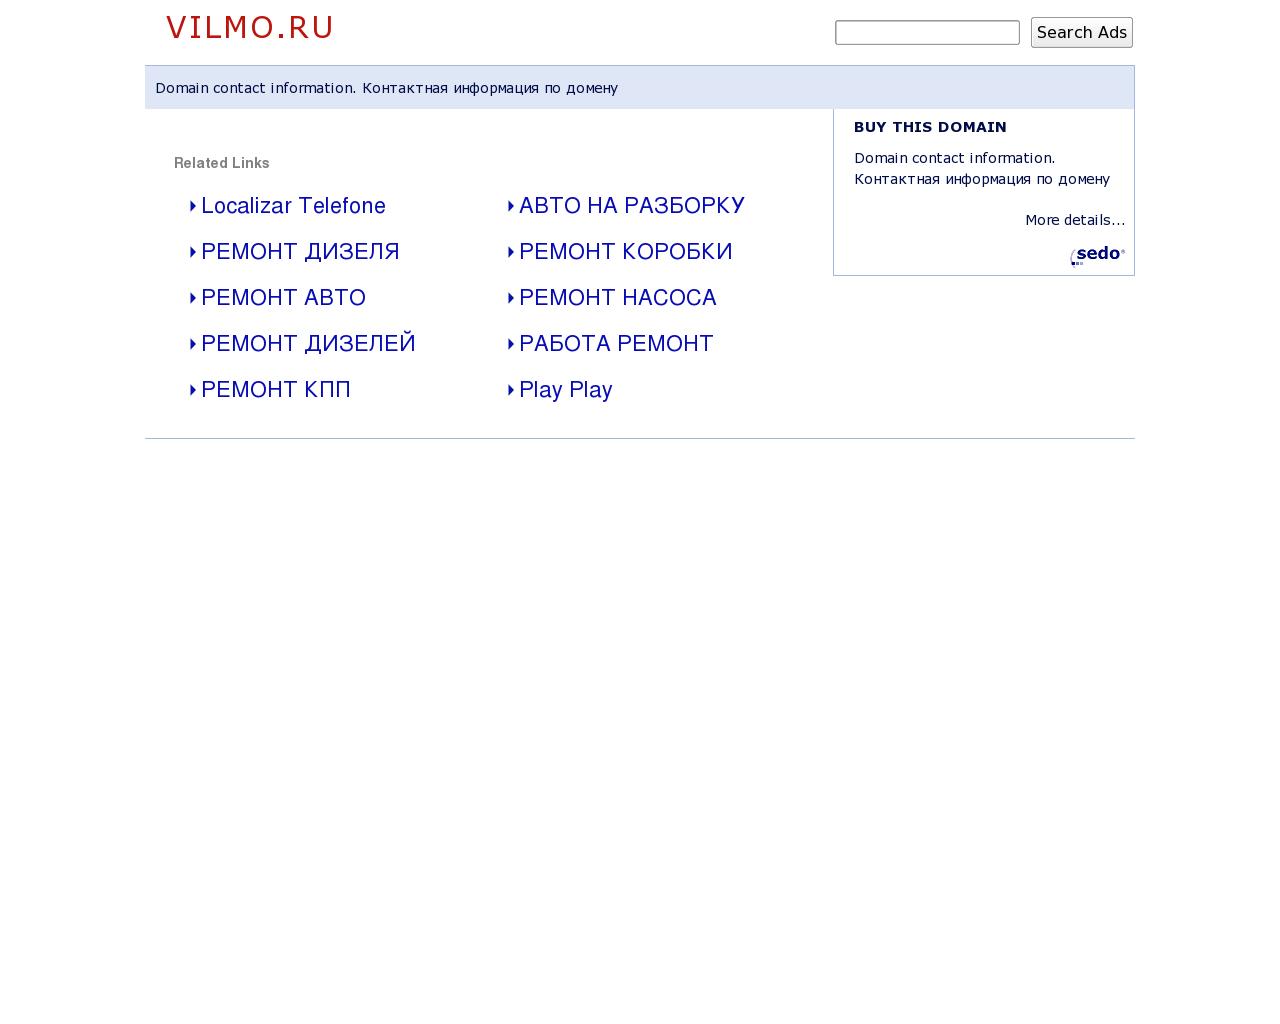 Изображение сайта vilmo.ru в разрешении 1280x1024